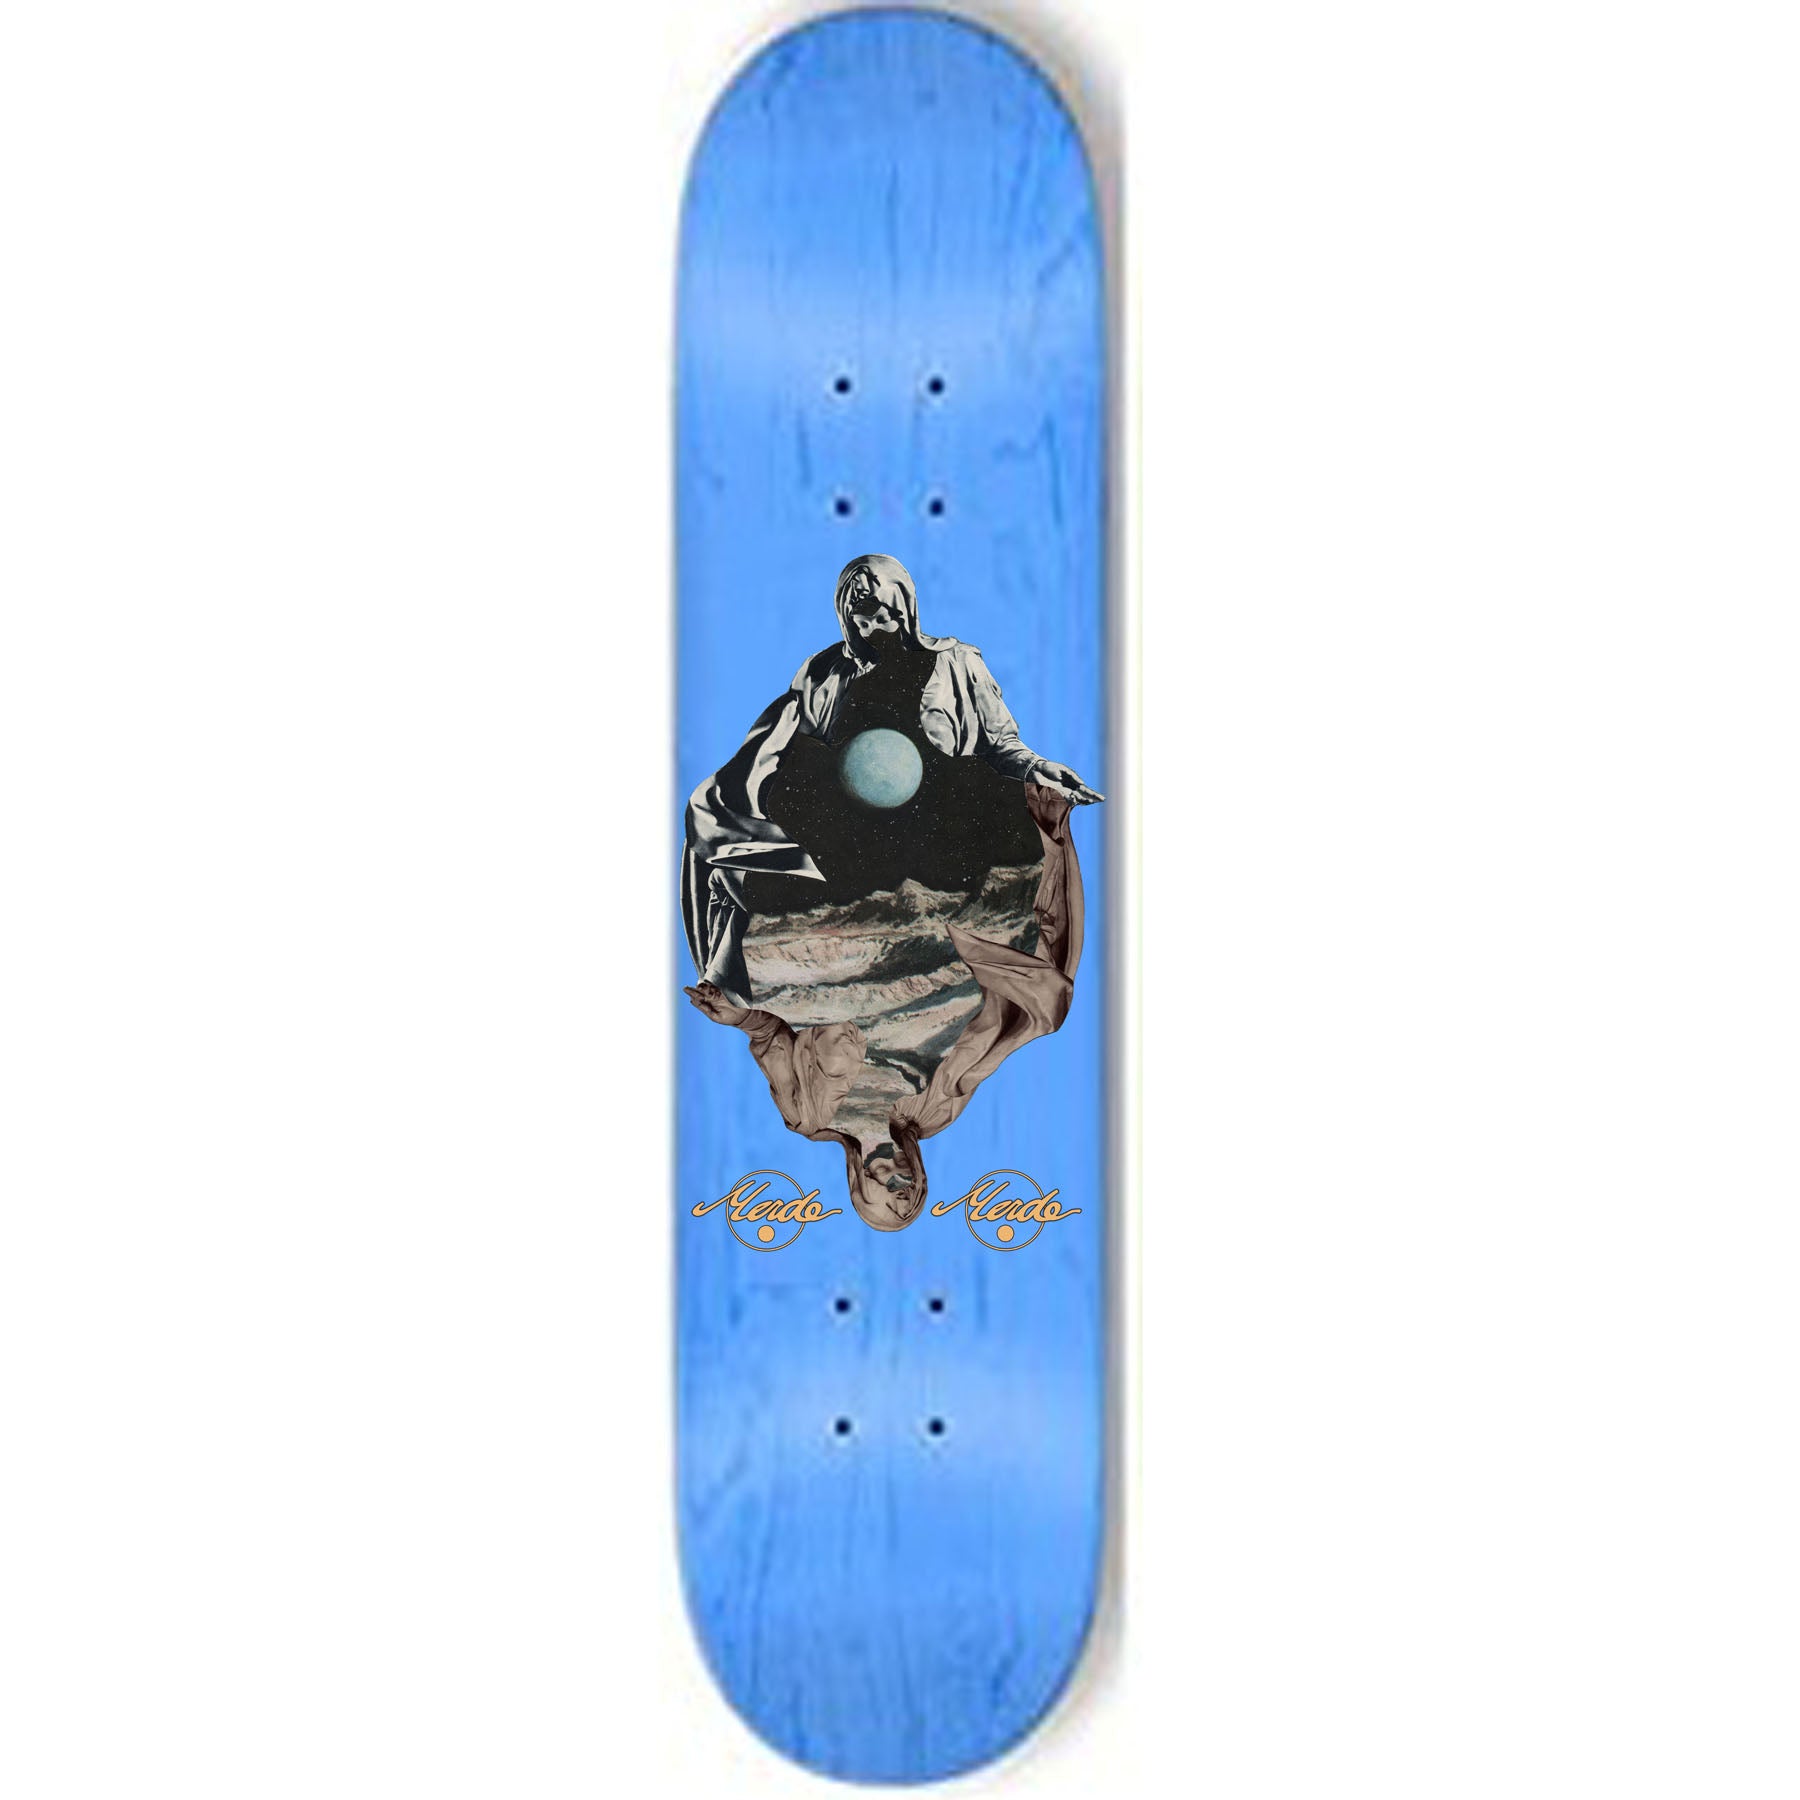 Merde Skateboards "Vaevre Tunger- Ojerum" assorted sized deck